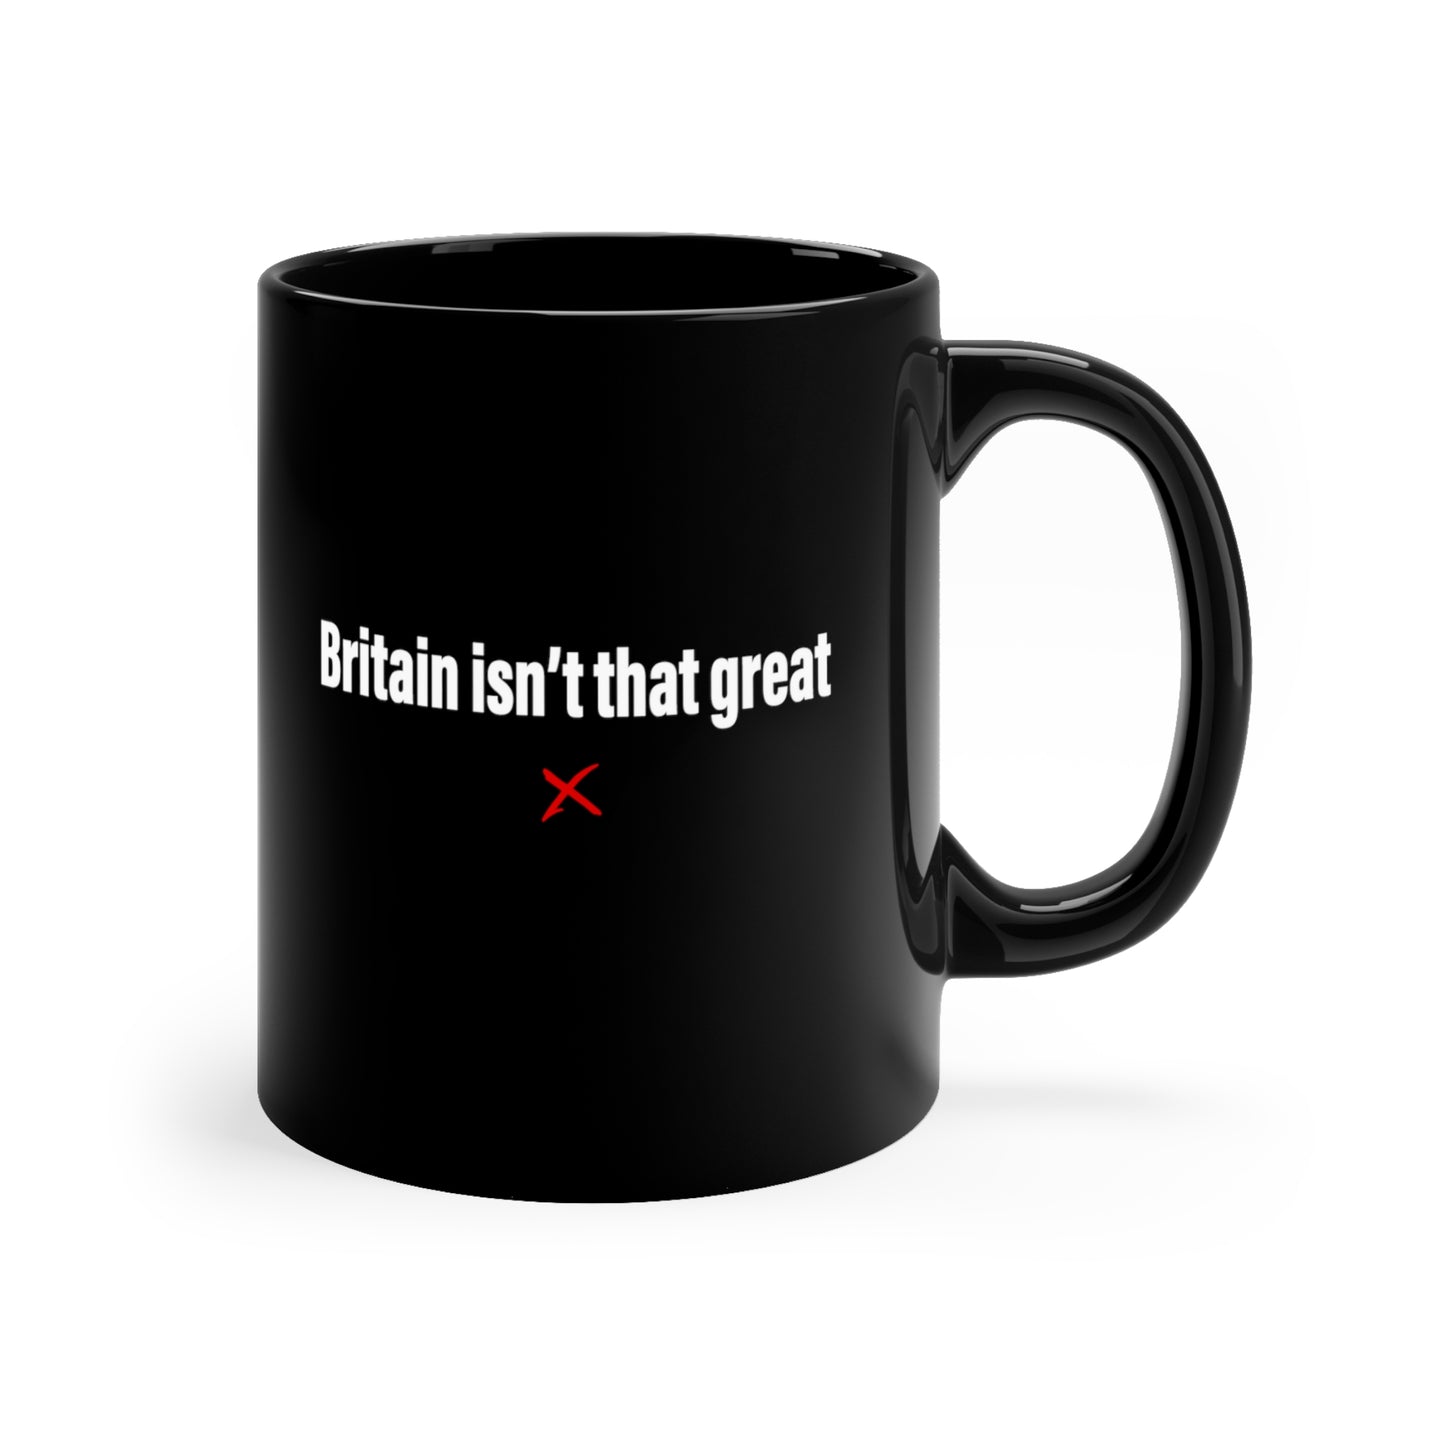 Britain isn't that great - Mug